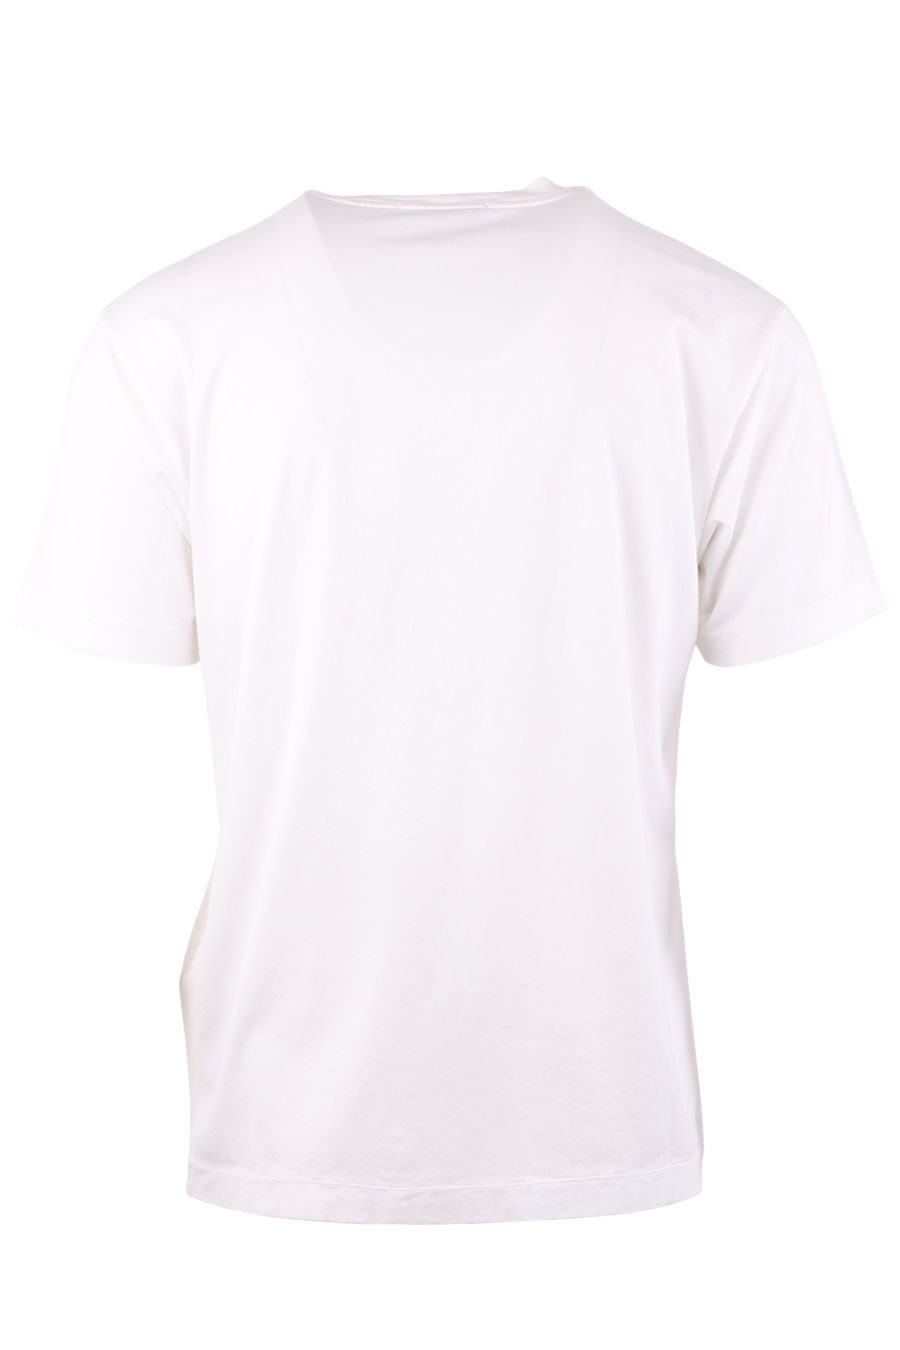 Camiseta blanca con parche de la marca - 0214d918e061e9c32aeb82c792656a95cf90bbd3